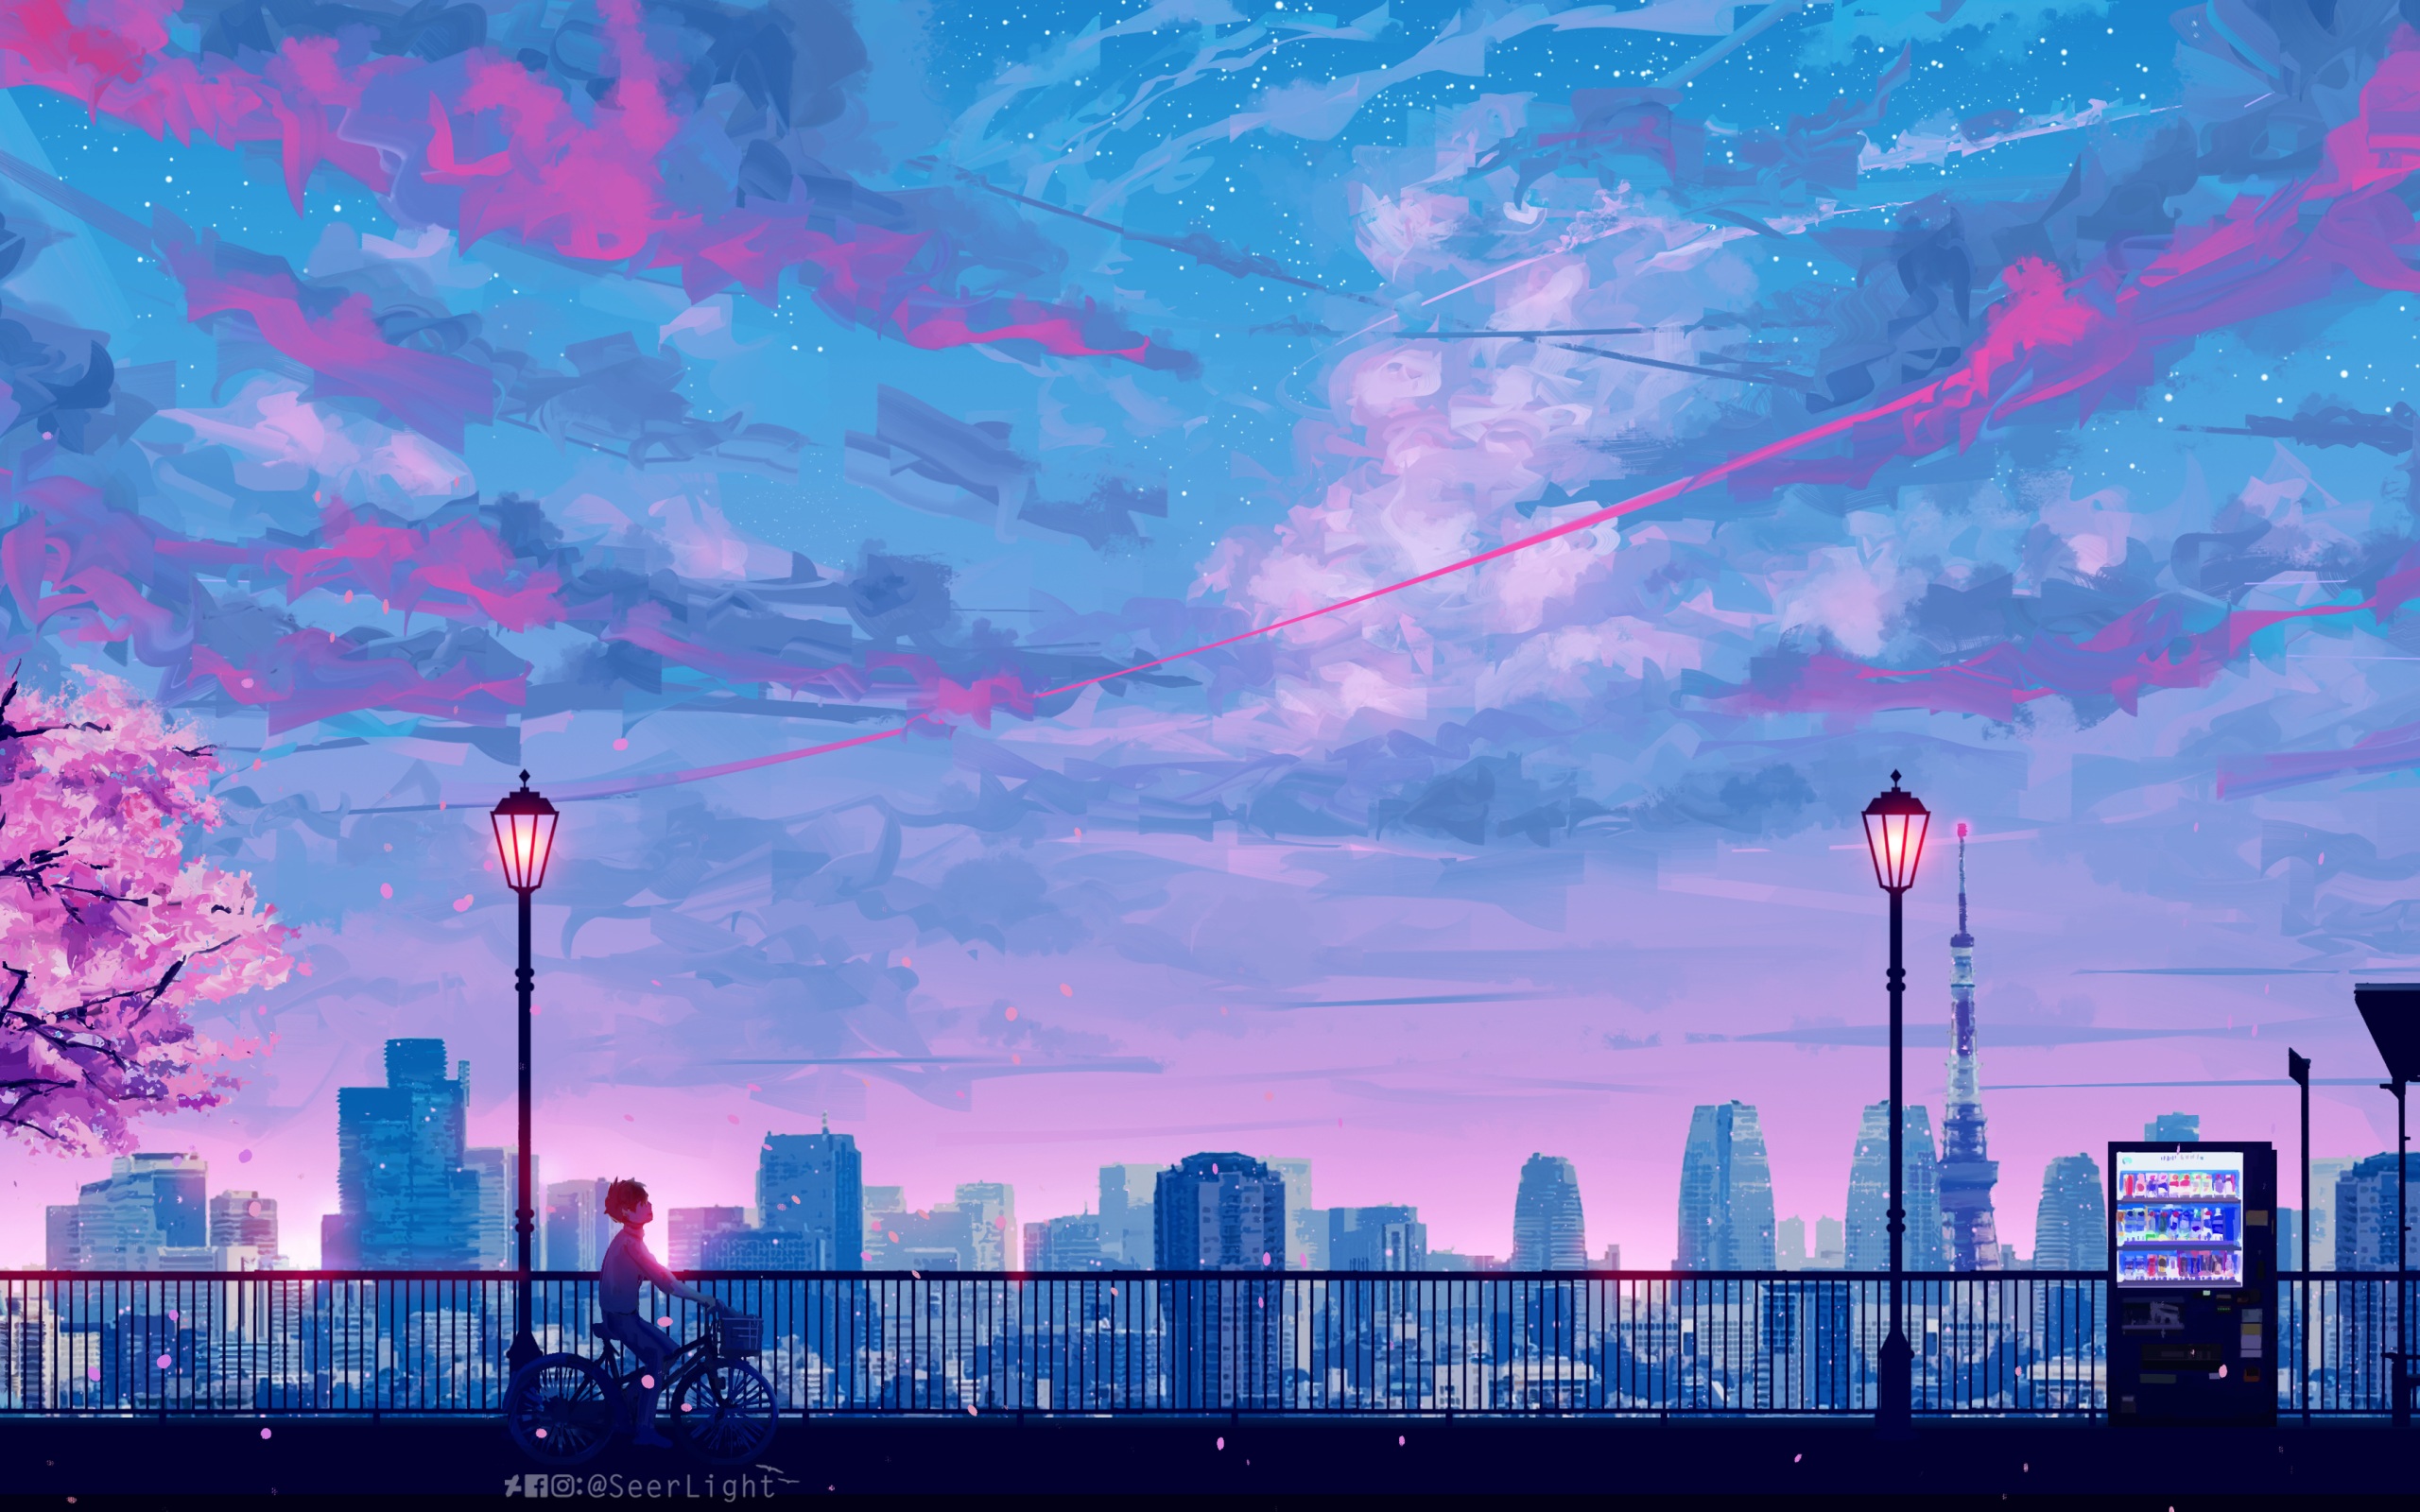 Hình nền Anime 4k về cảnh quan thành phố sẽ đưa bạn đến những góc phố đầy sáng tạo và nghệ thuật. Với đường nét vô cùng sinh động và chi tiết, bạn sẽ có cảm giác mình thực sự đang lạc vào một thế giới Anime đích thực.